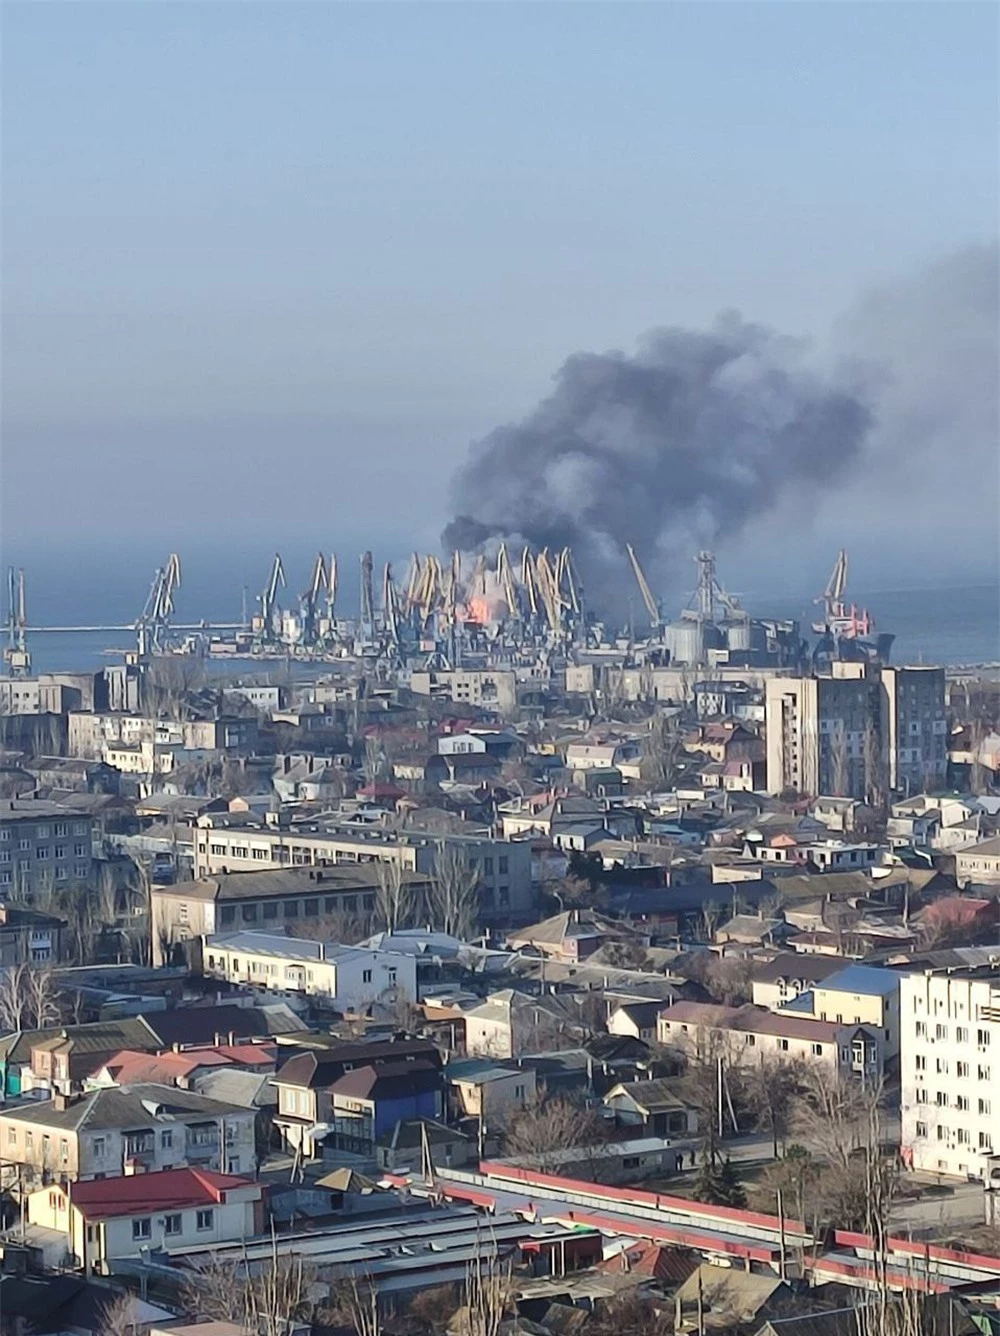 NÓNG: Nổ lớn ở cảng Berdyansk, lửa cháy dữ dội - Ukraine tuyên bố tàu chiến Nga bị phá hủy - Ảnh 3.